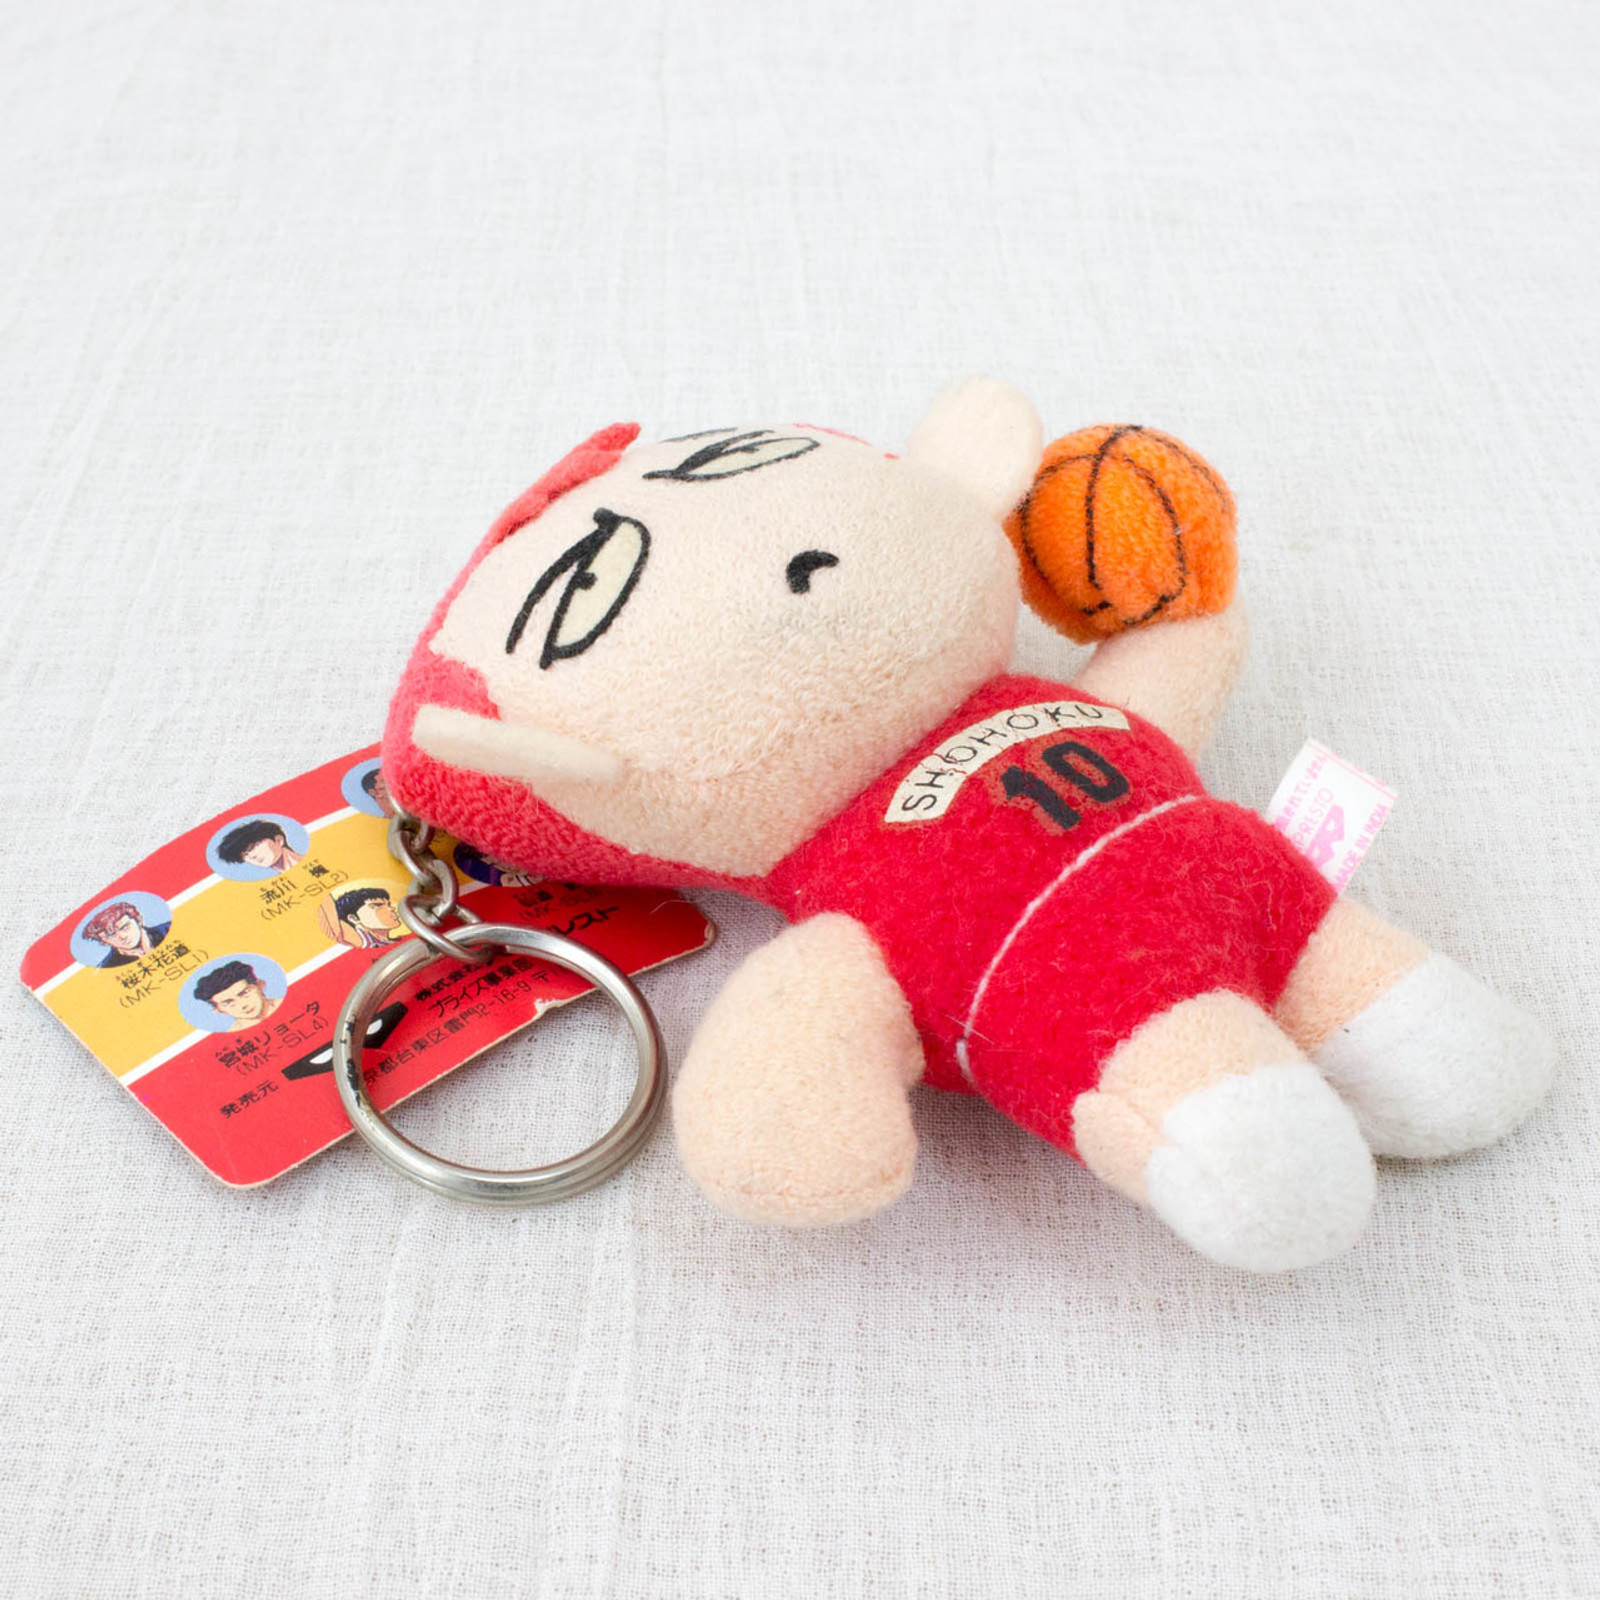 SLAM DUNK Hanamichi Sakuragi Shohoku #10 Plush Doll Keychain JAPAN ANIME MANGA